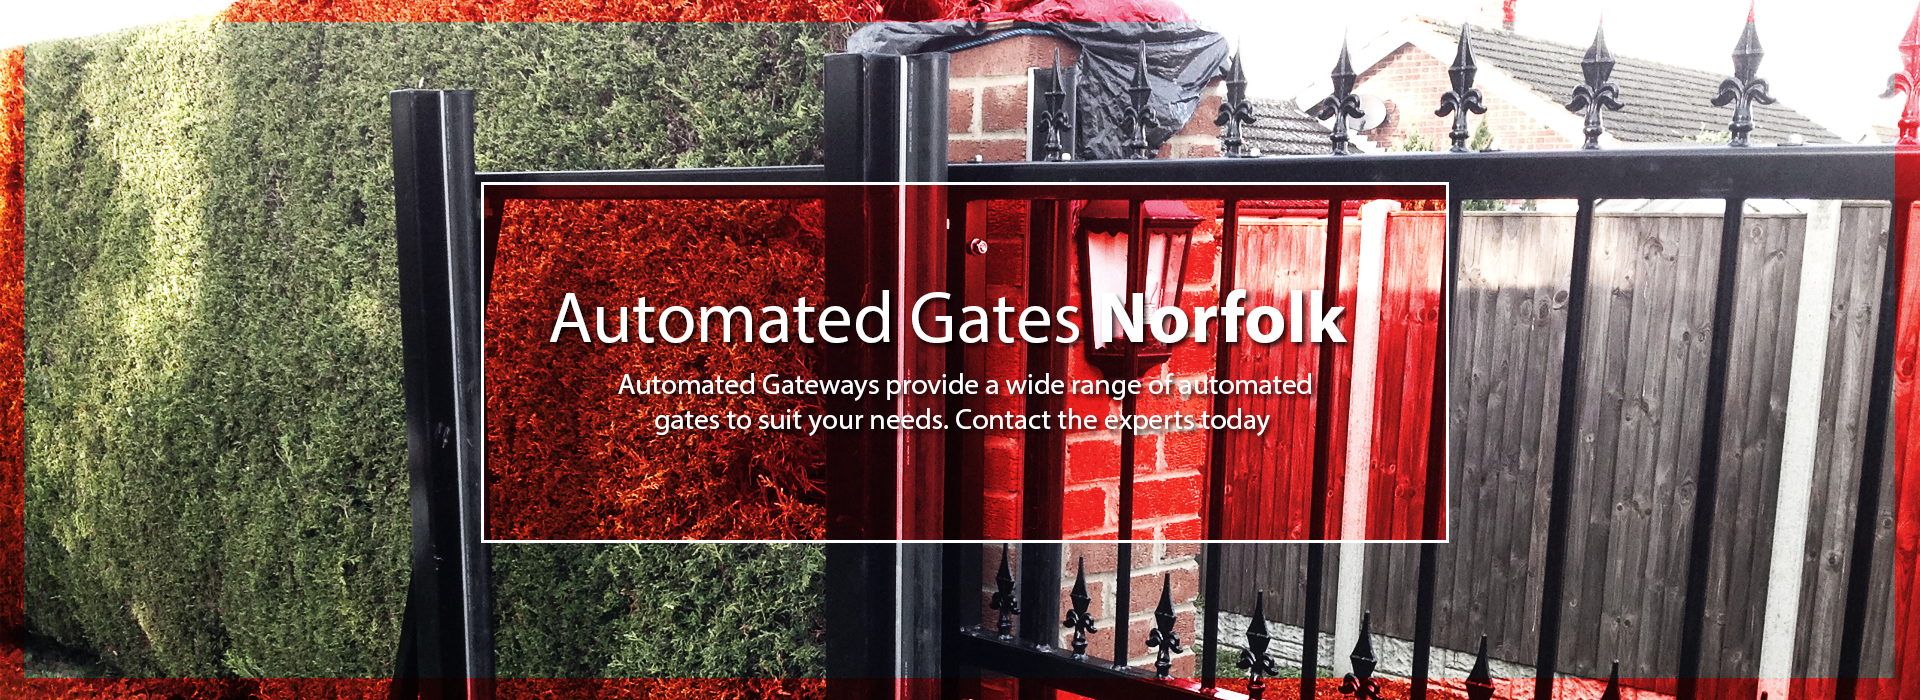 Automated Gates Norfolk